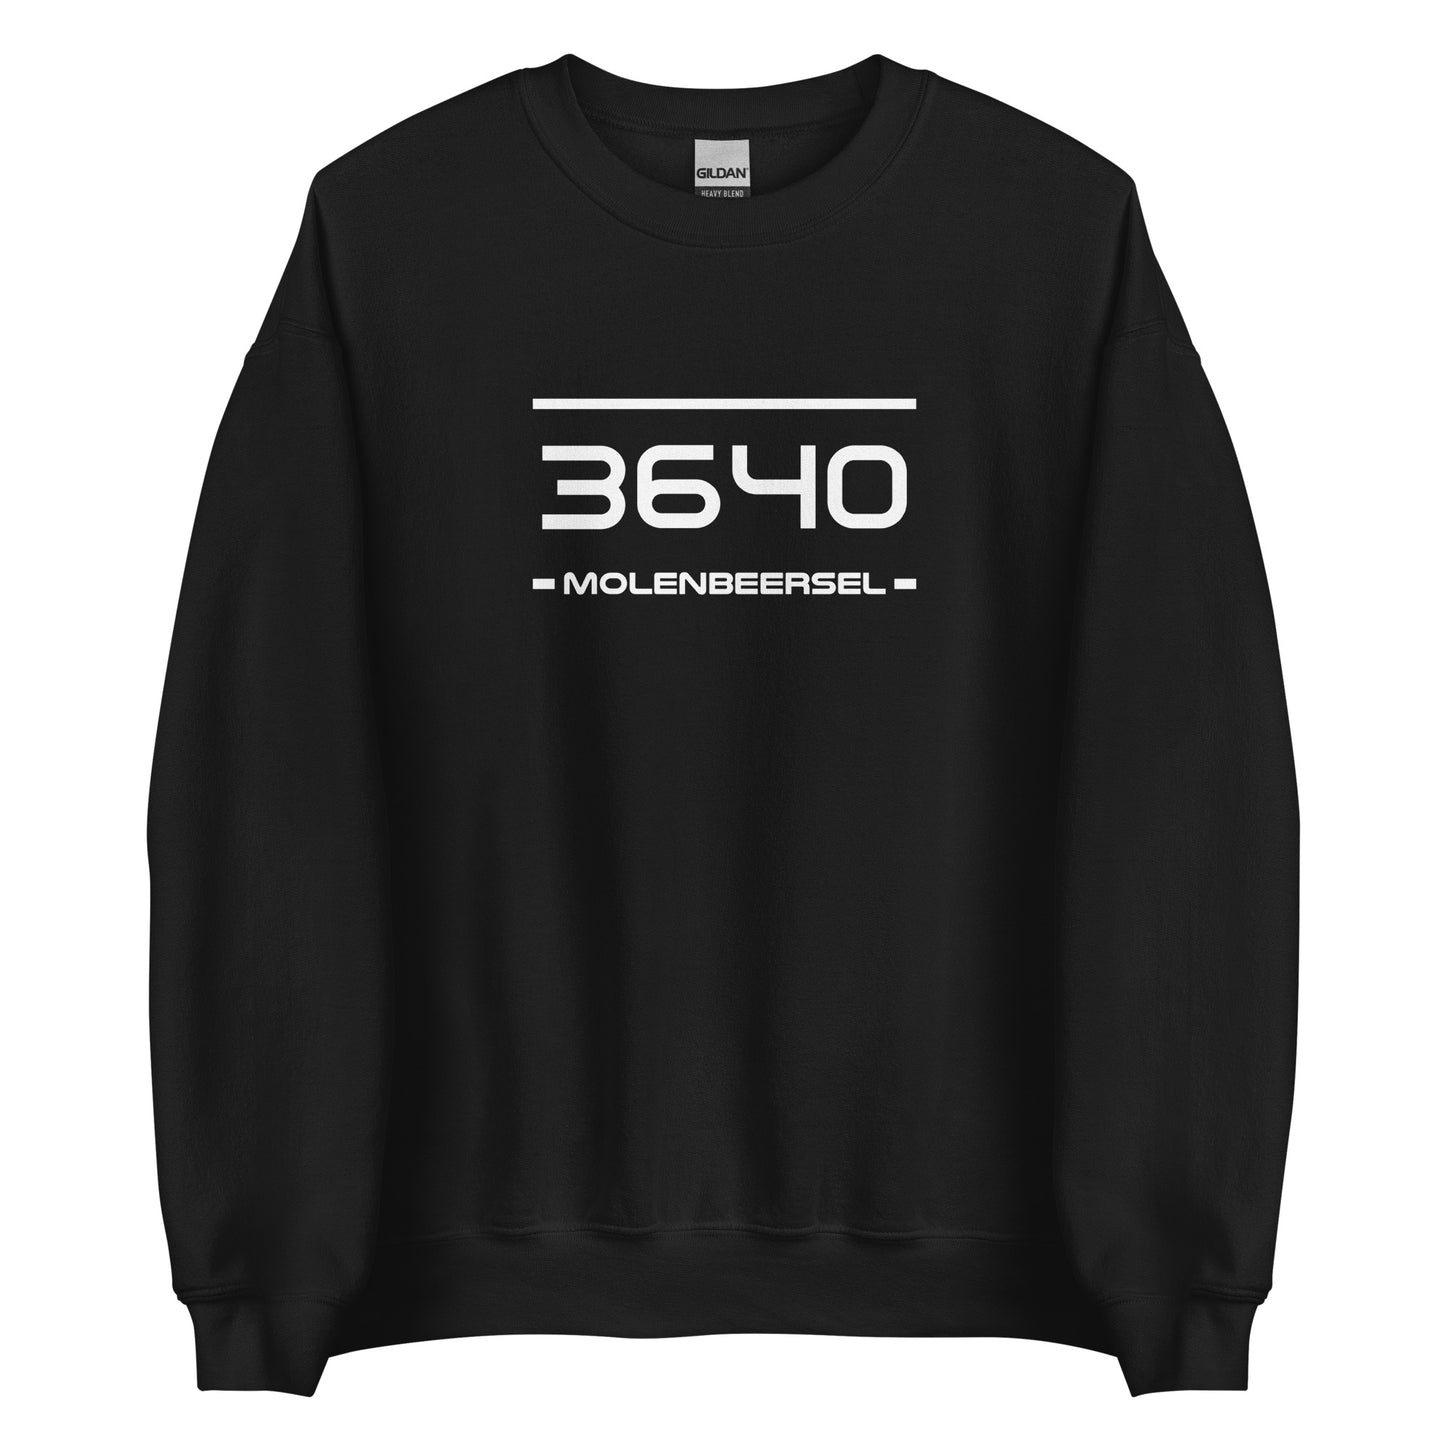 Sweater - 3640 - Molenbeersel (M/V)